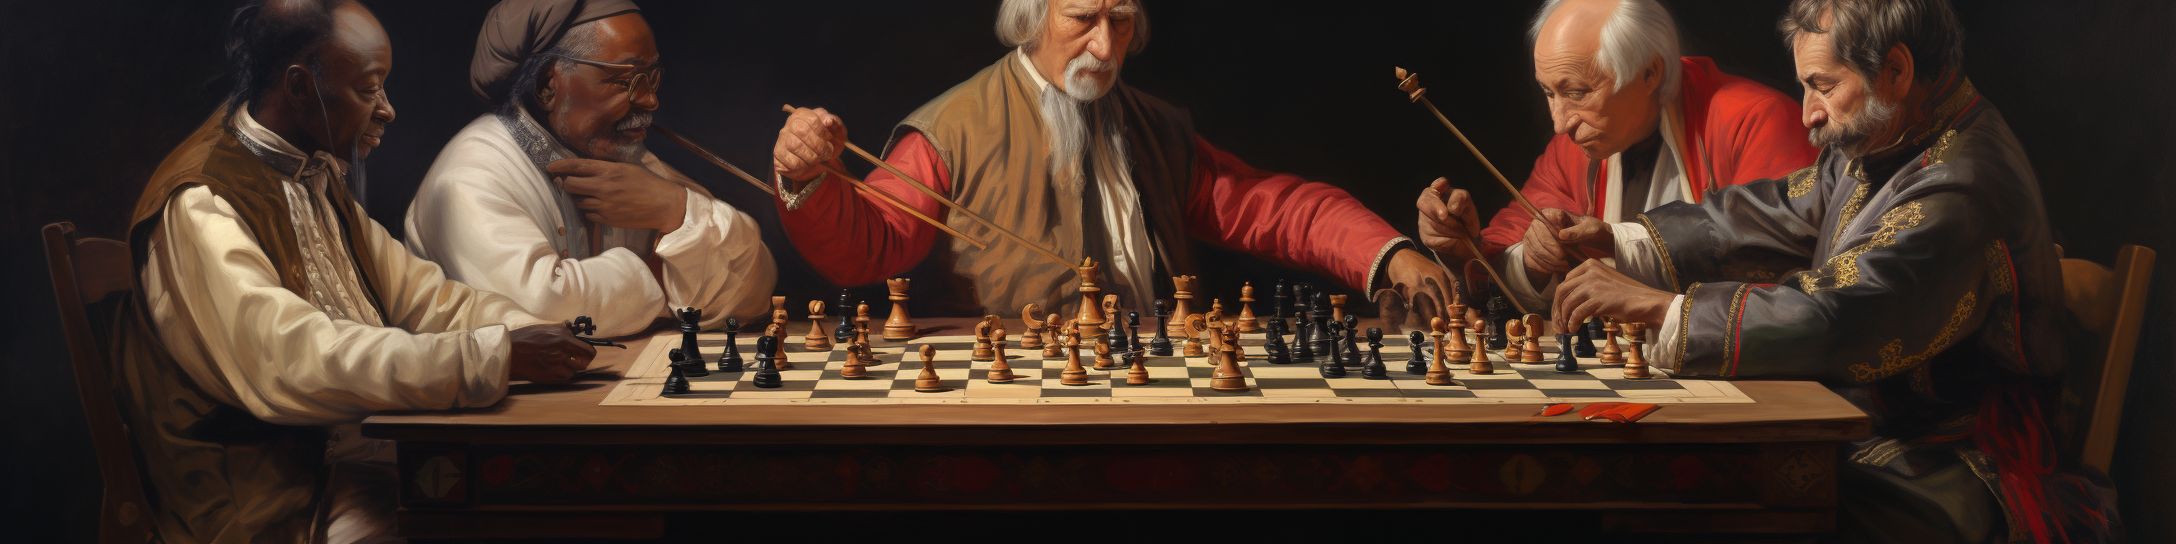 L'influence culturelle des échecs à travers les âges.